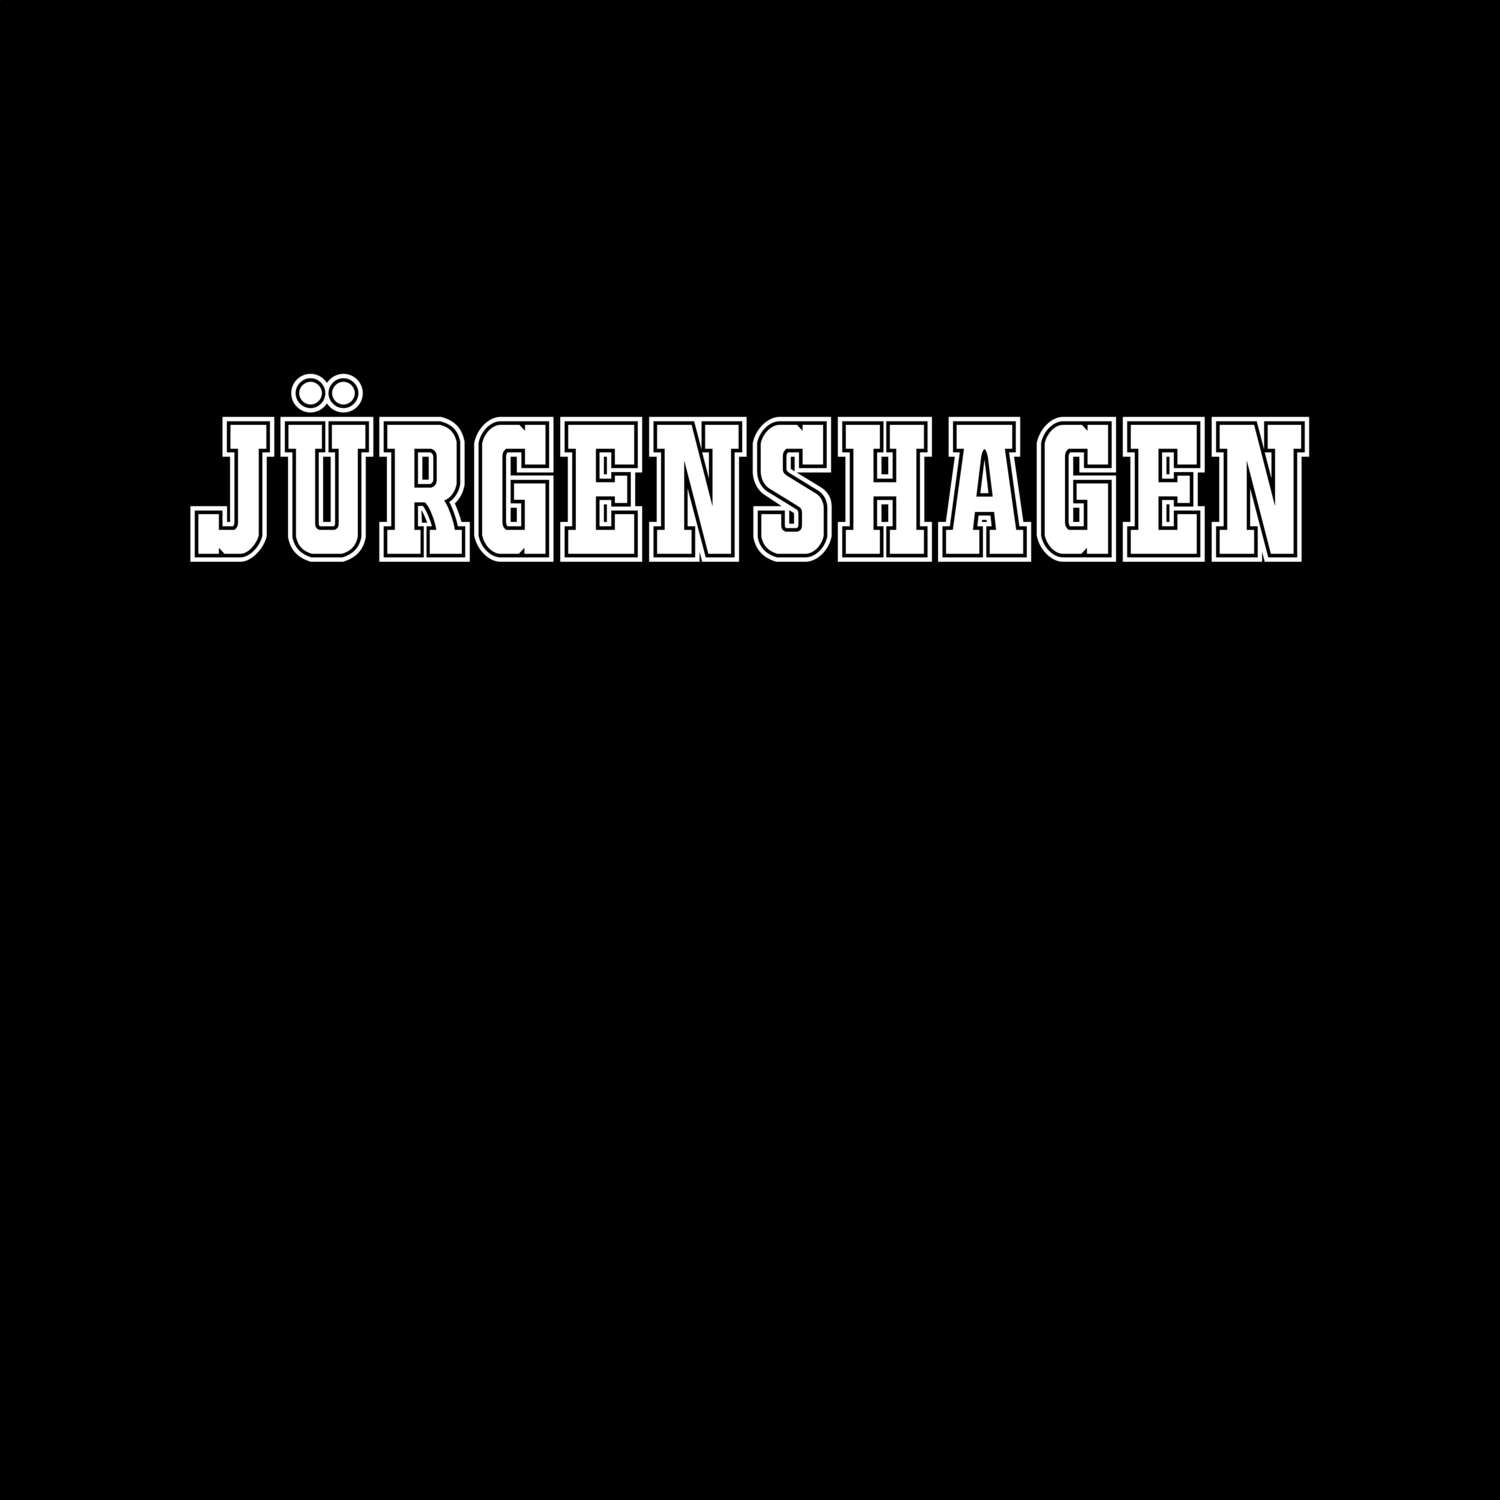 Jürgenshagen T-Shirt »Classic«